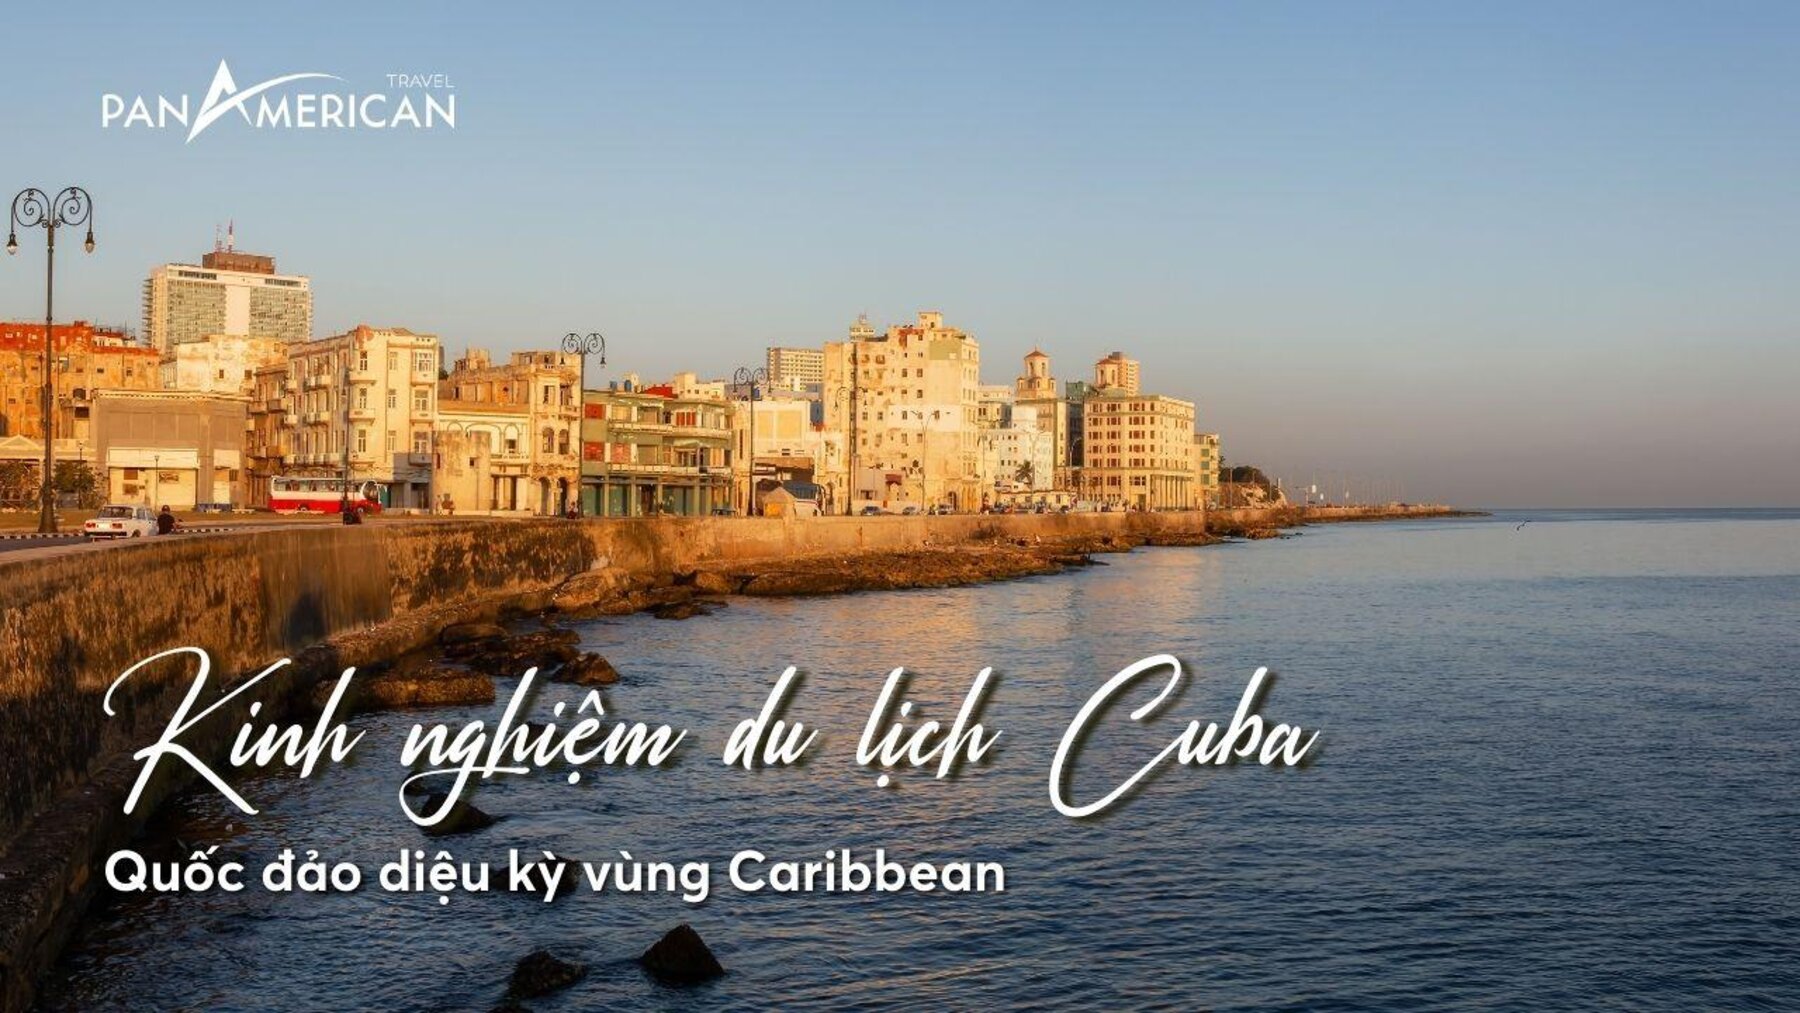 Kinh nghiệm du lịch Cuba - quốc đảo diệu kỳ của vùng Caribbean